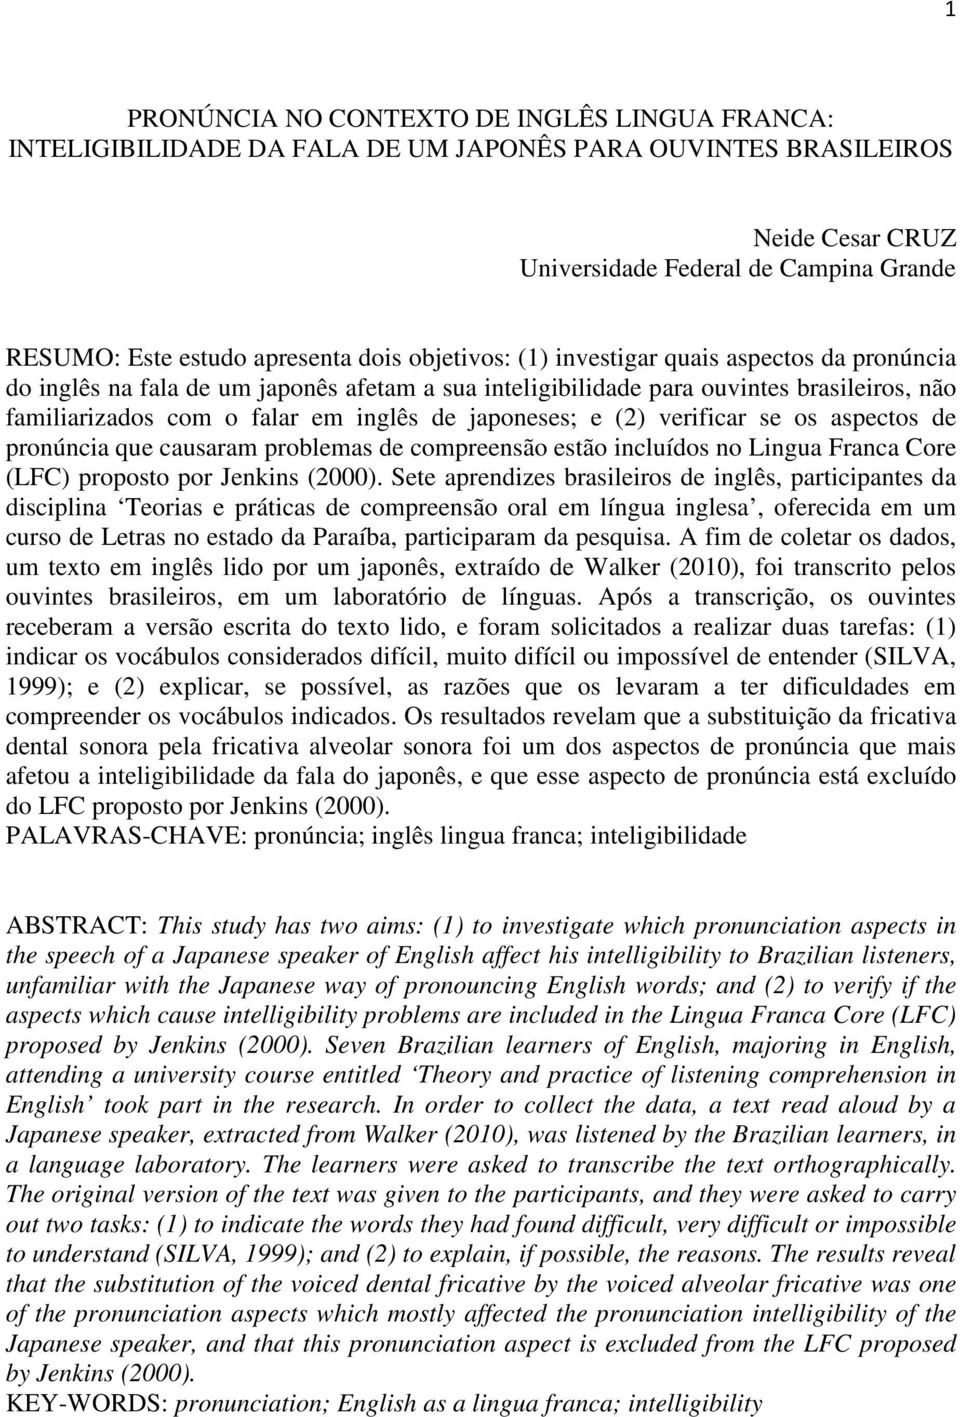 japoneses; e (2) verificar se os aspectos de pronúncia que causaram problemas de compreensão estão incluídos no Lingua Franca Core (LFC) proposto por Jenkins (2000).